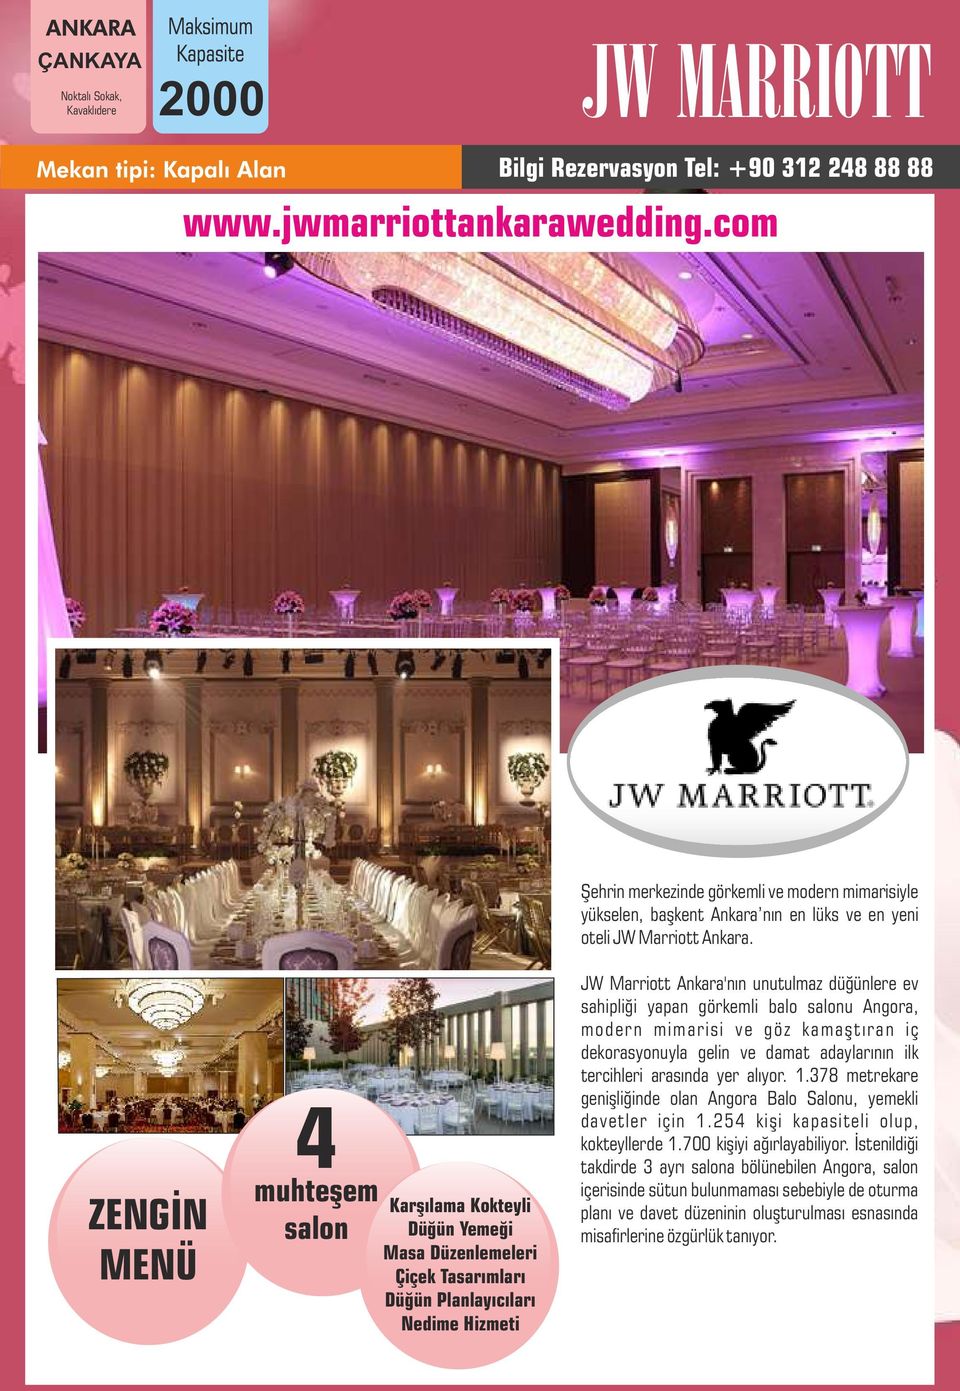 ZENGİN MENÜ 4 muhteşem salon Karşılama Kokteyli Düğün Yemeği Masa Düzenlemeleri Çiçek Tasarımları Düğün Planlayıcıları Nedime Hizmeti JW Marriott Ankara'nın unutulmaz düğünlere ev sahipliği yapan